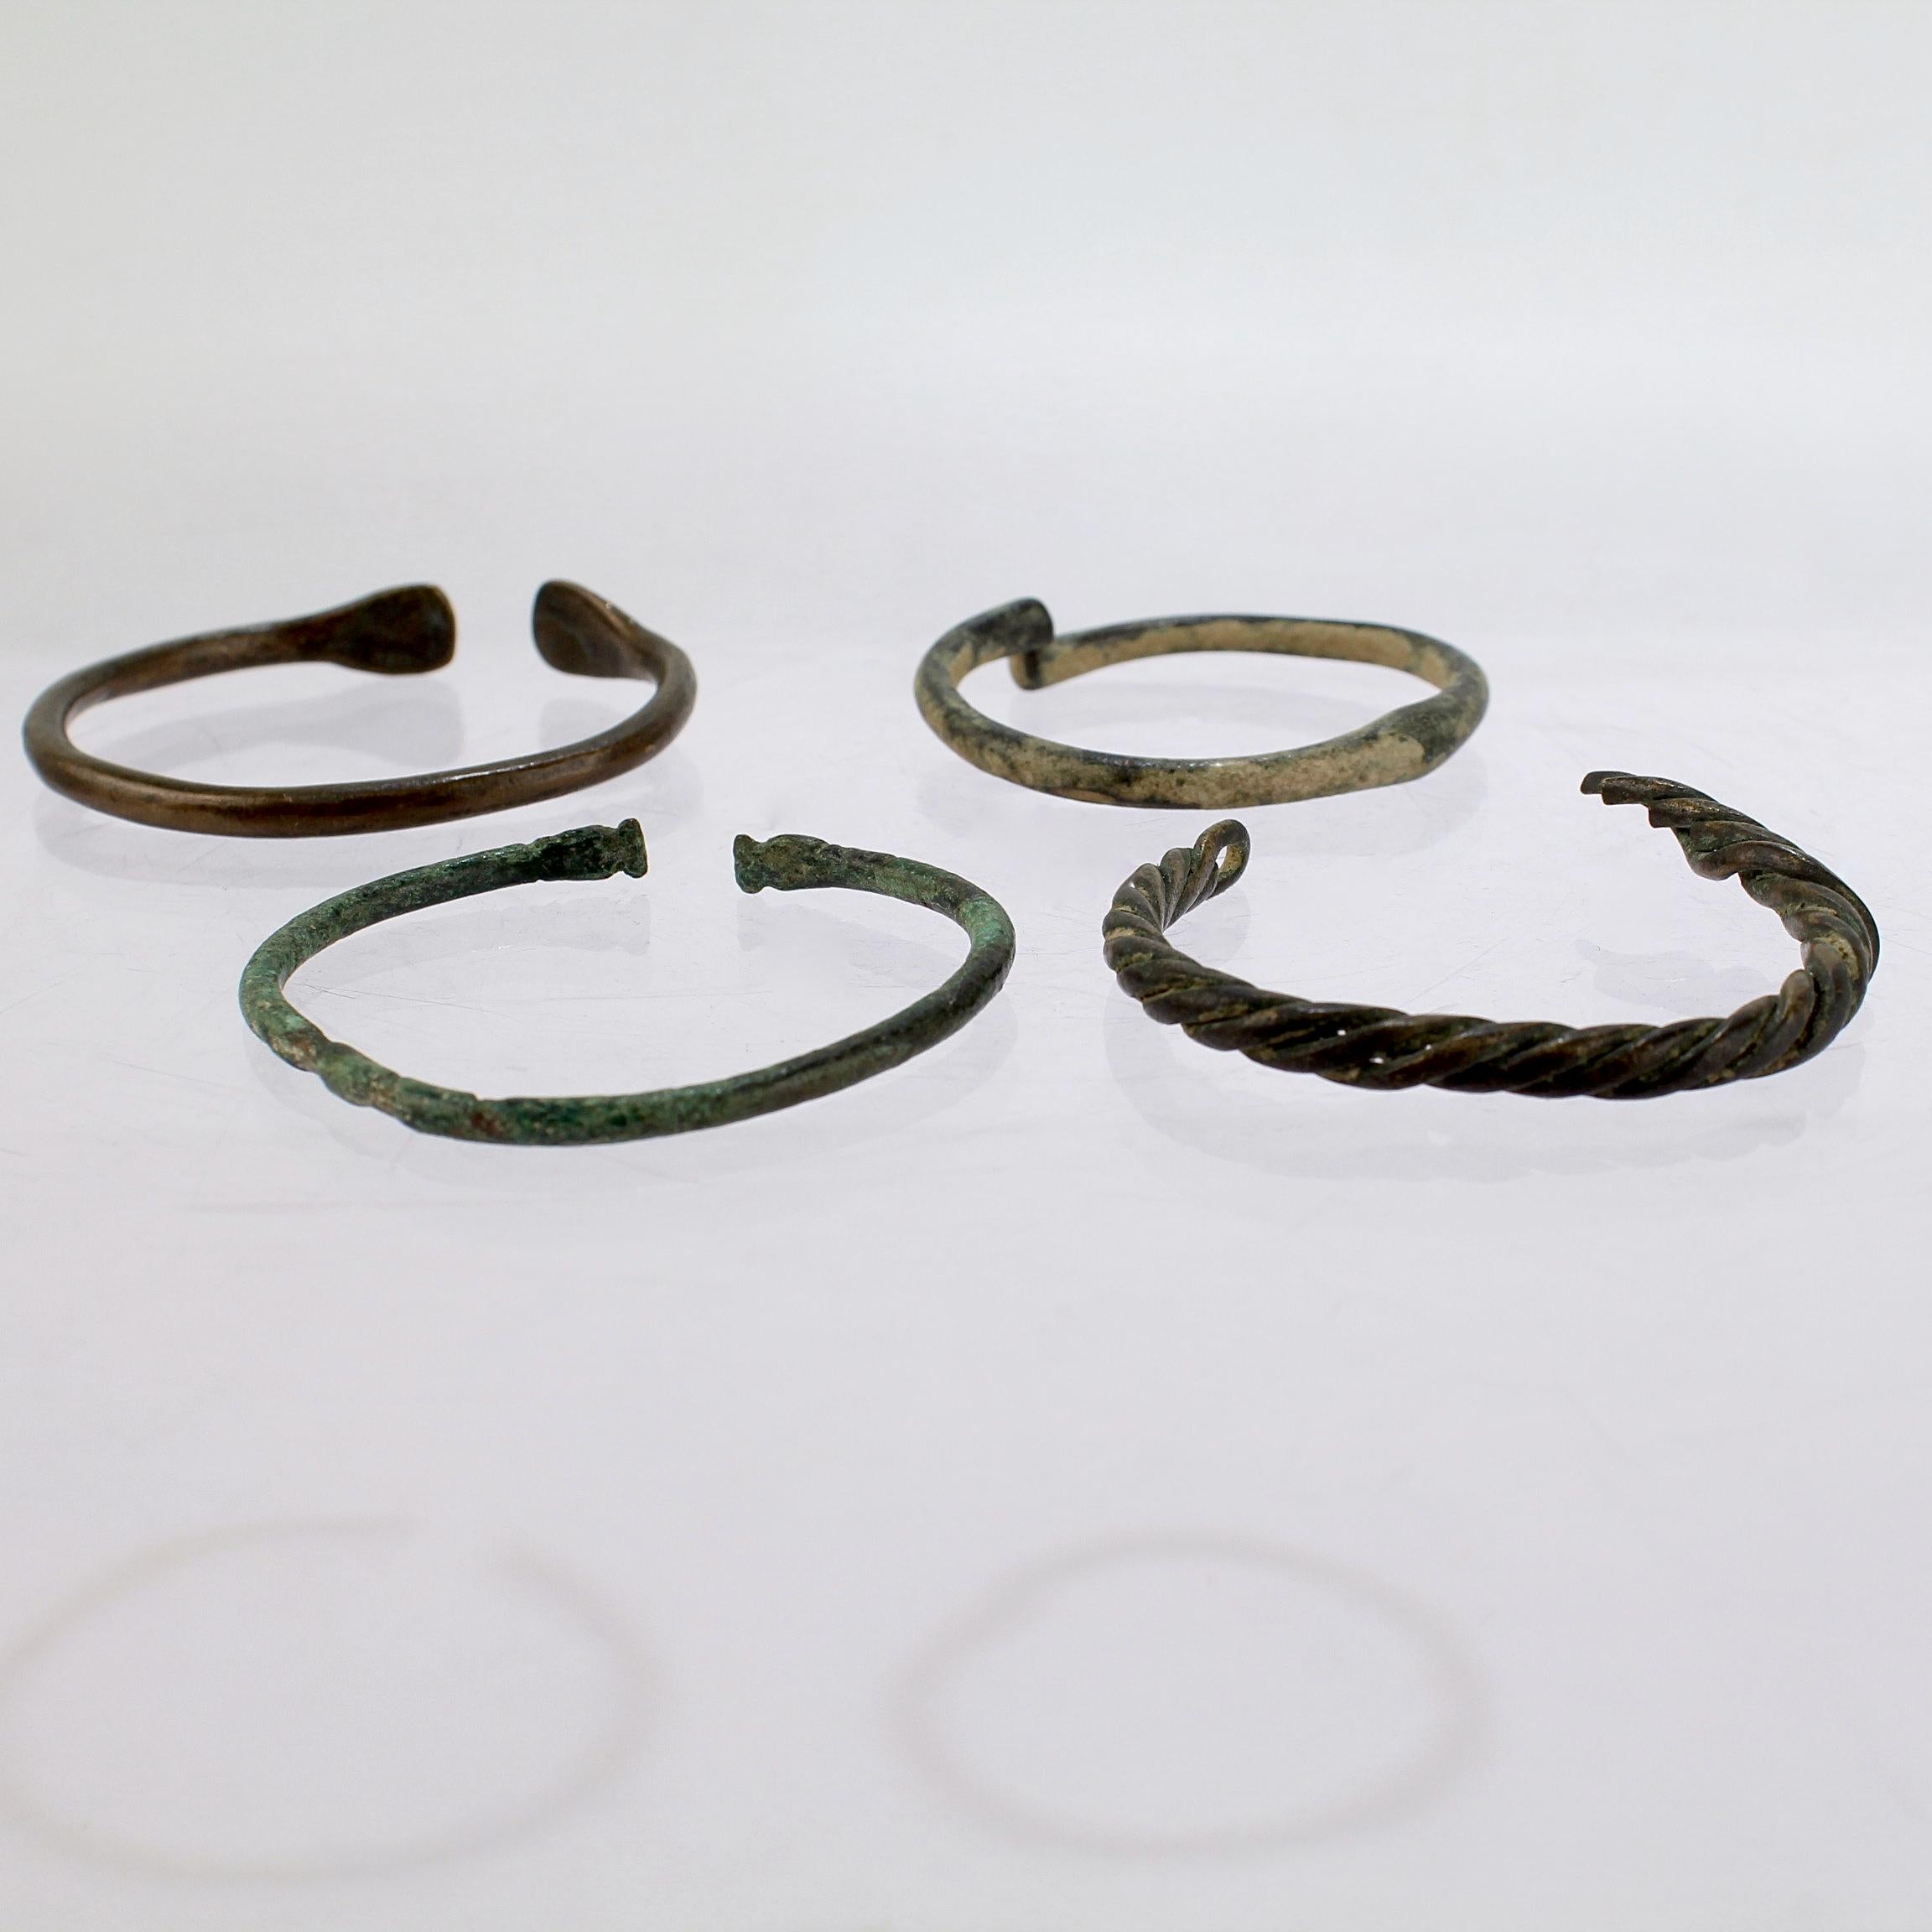 Romain classique Groupe de 4 bracelets en bronze de style romain ancien